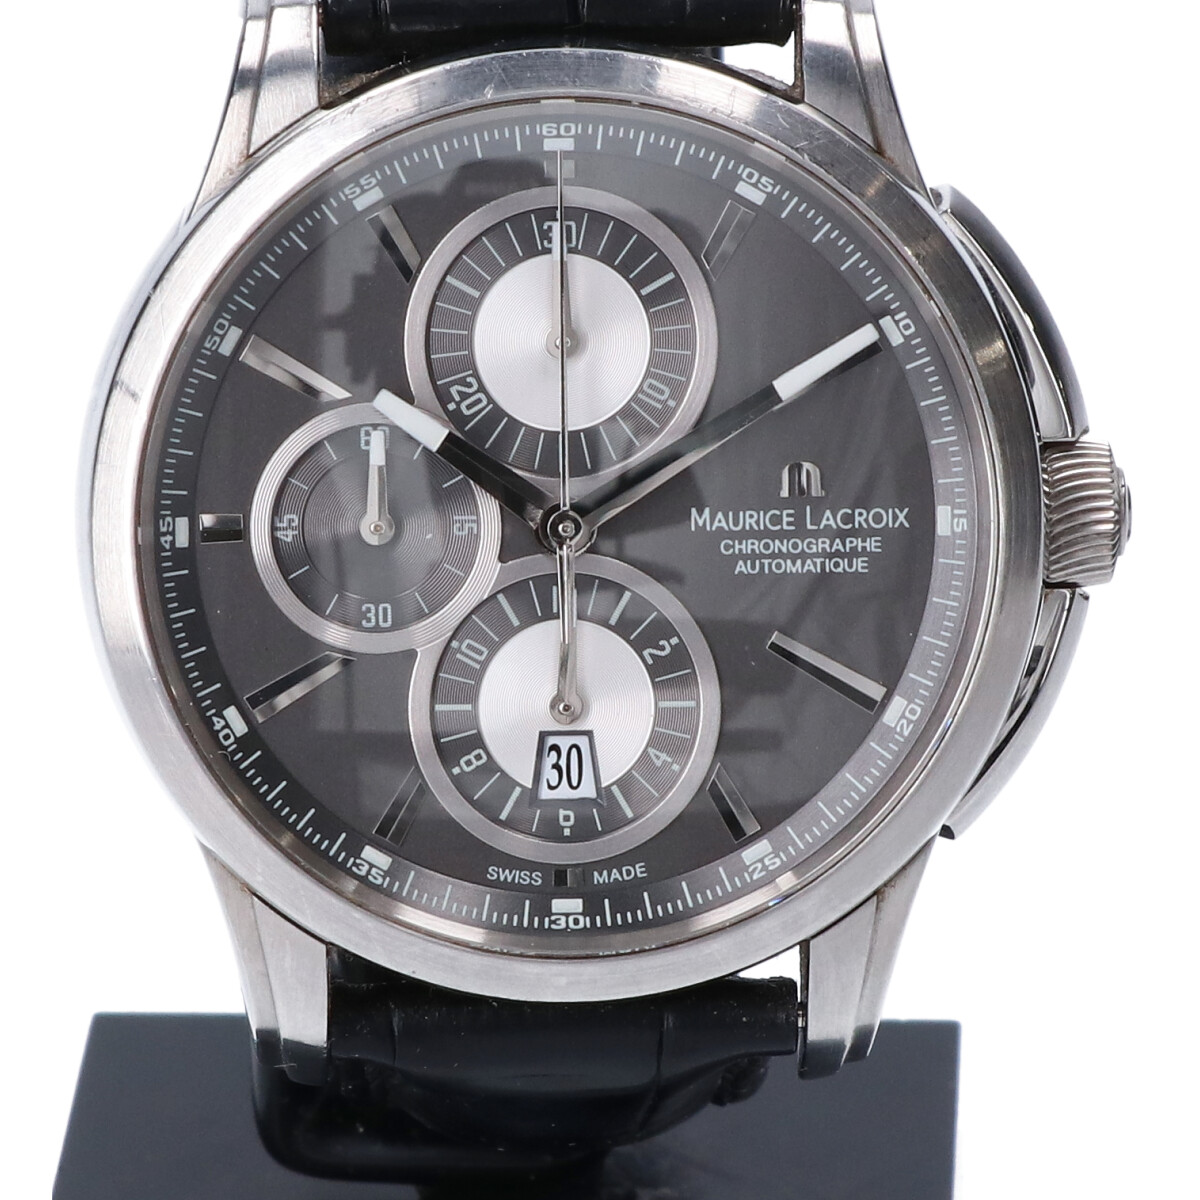 モーリスラクロアのPT6178 88 マスターピース ポントス バックスケルトン レザーベルト クロノグラフ 自動巻き 腕時計の買取実績です。